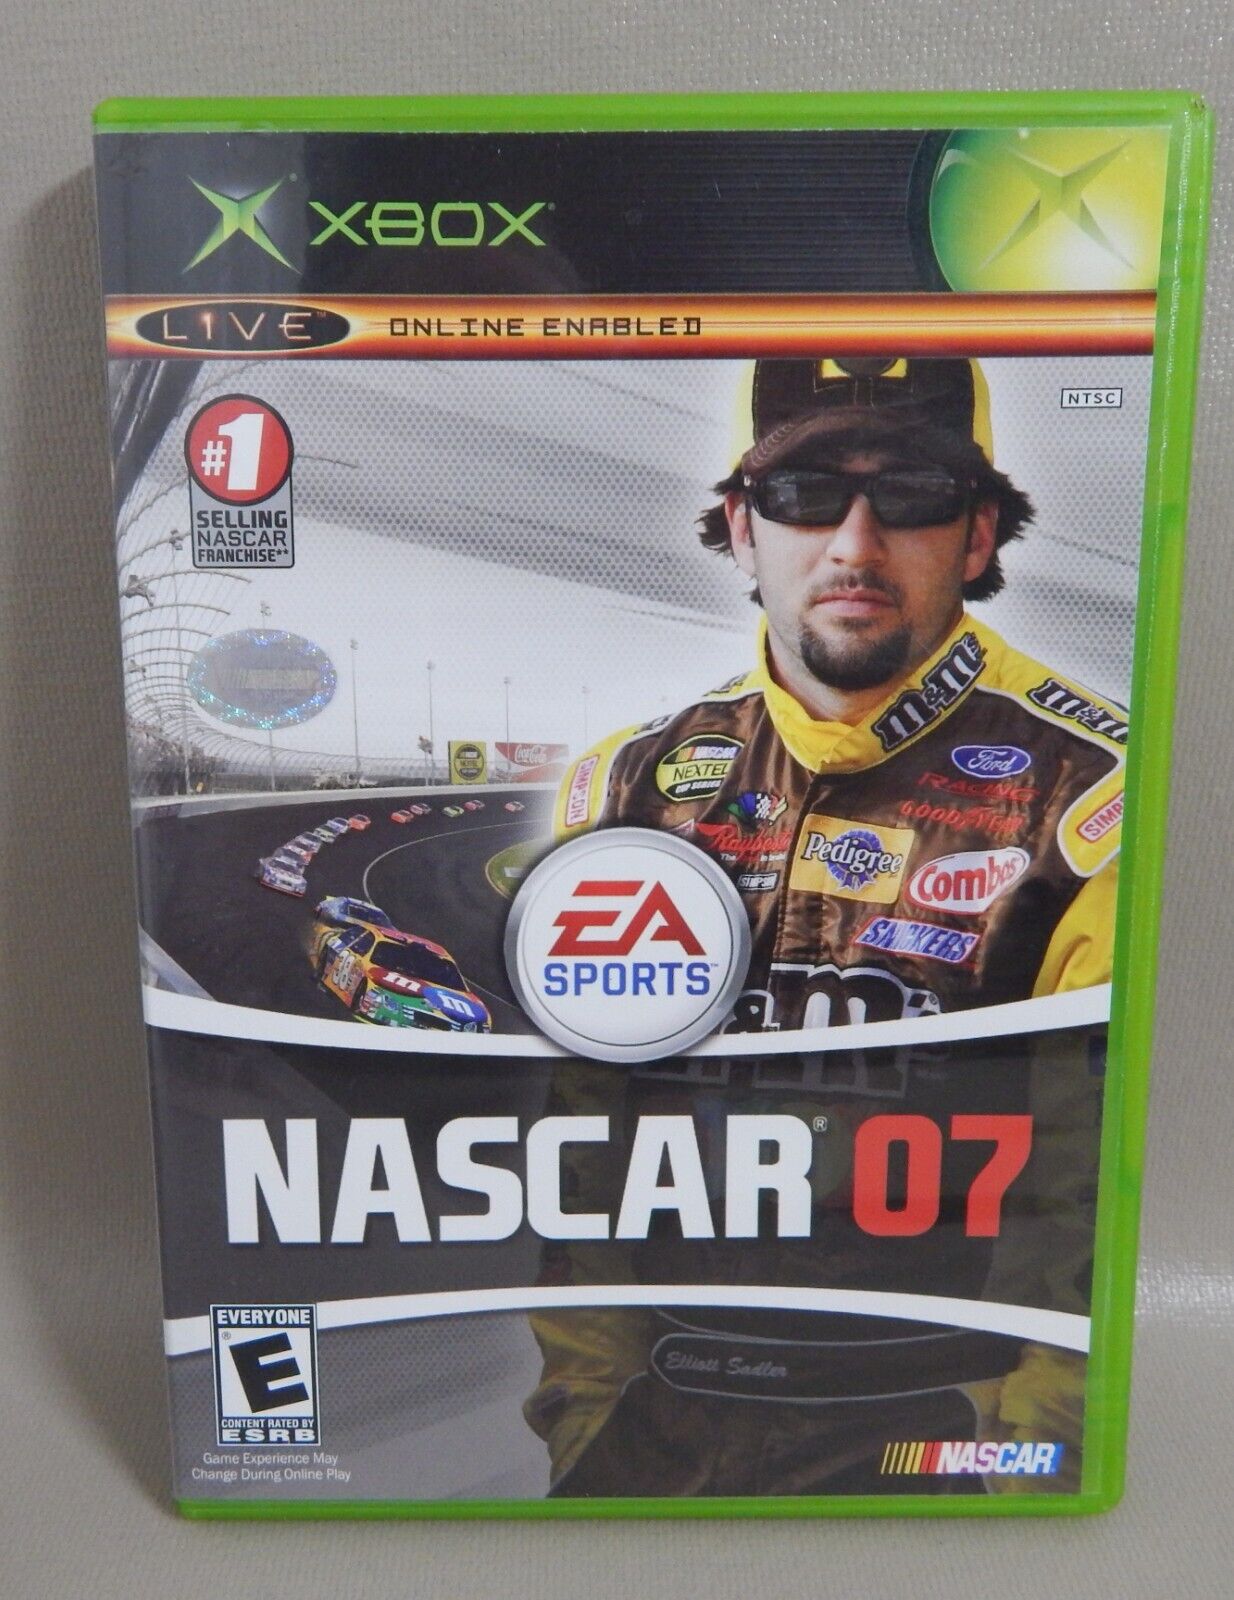 NASCAR 07 (Microsoft Xbox, 2006) E. Sadler Completo con Manual - Limpio Probado En muy buena condición